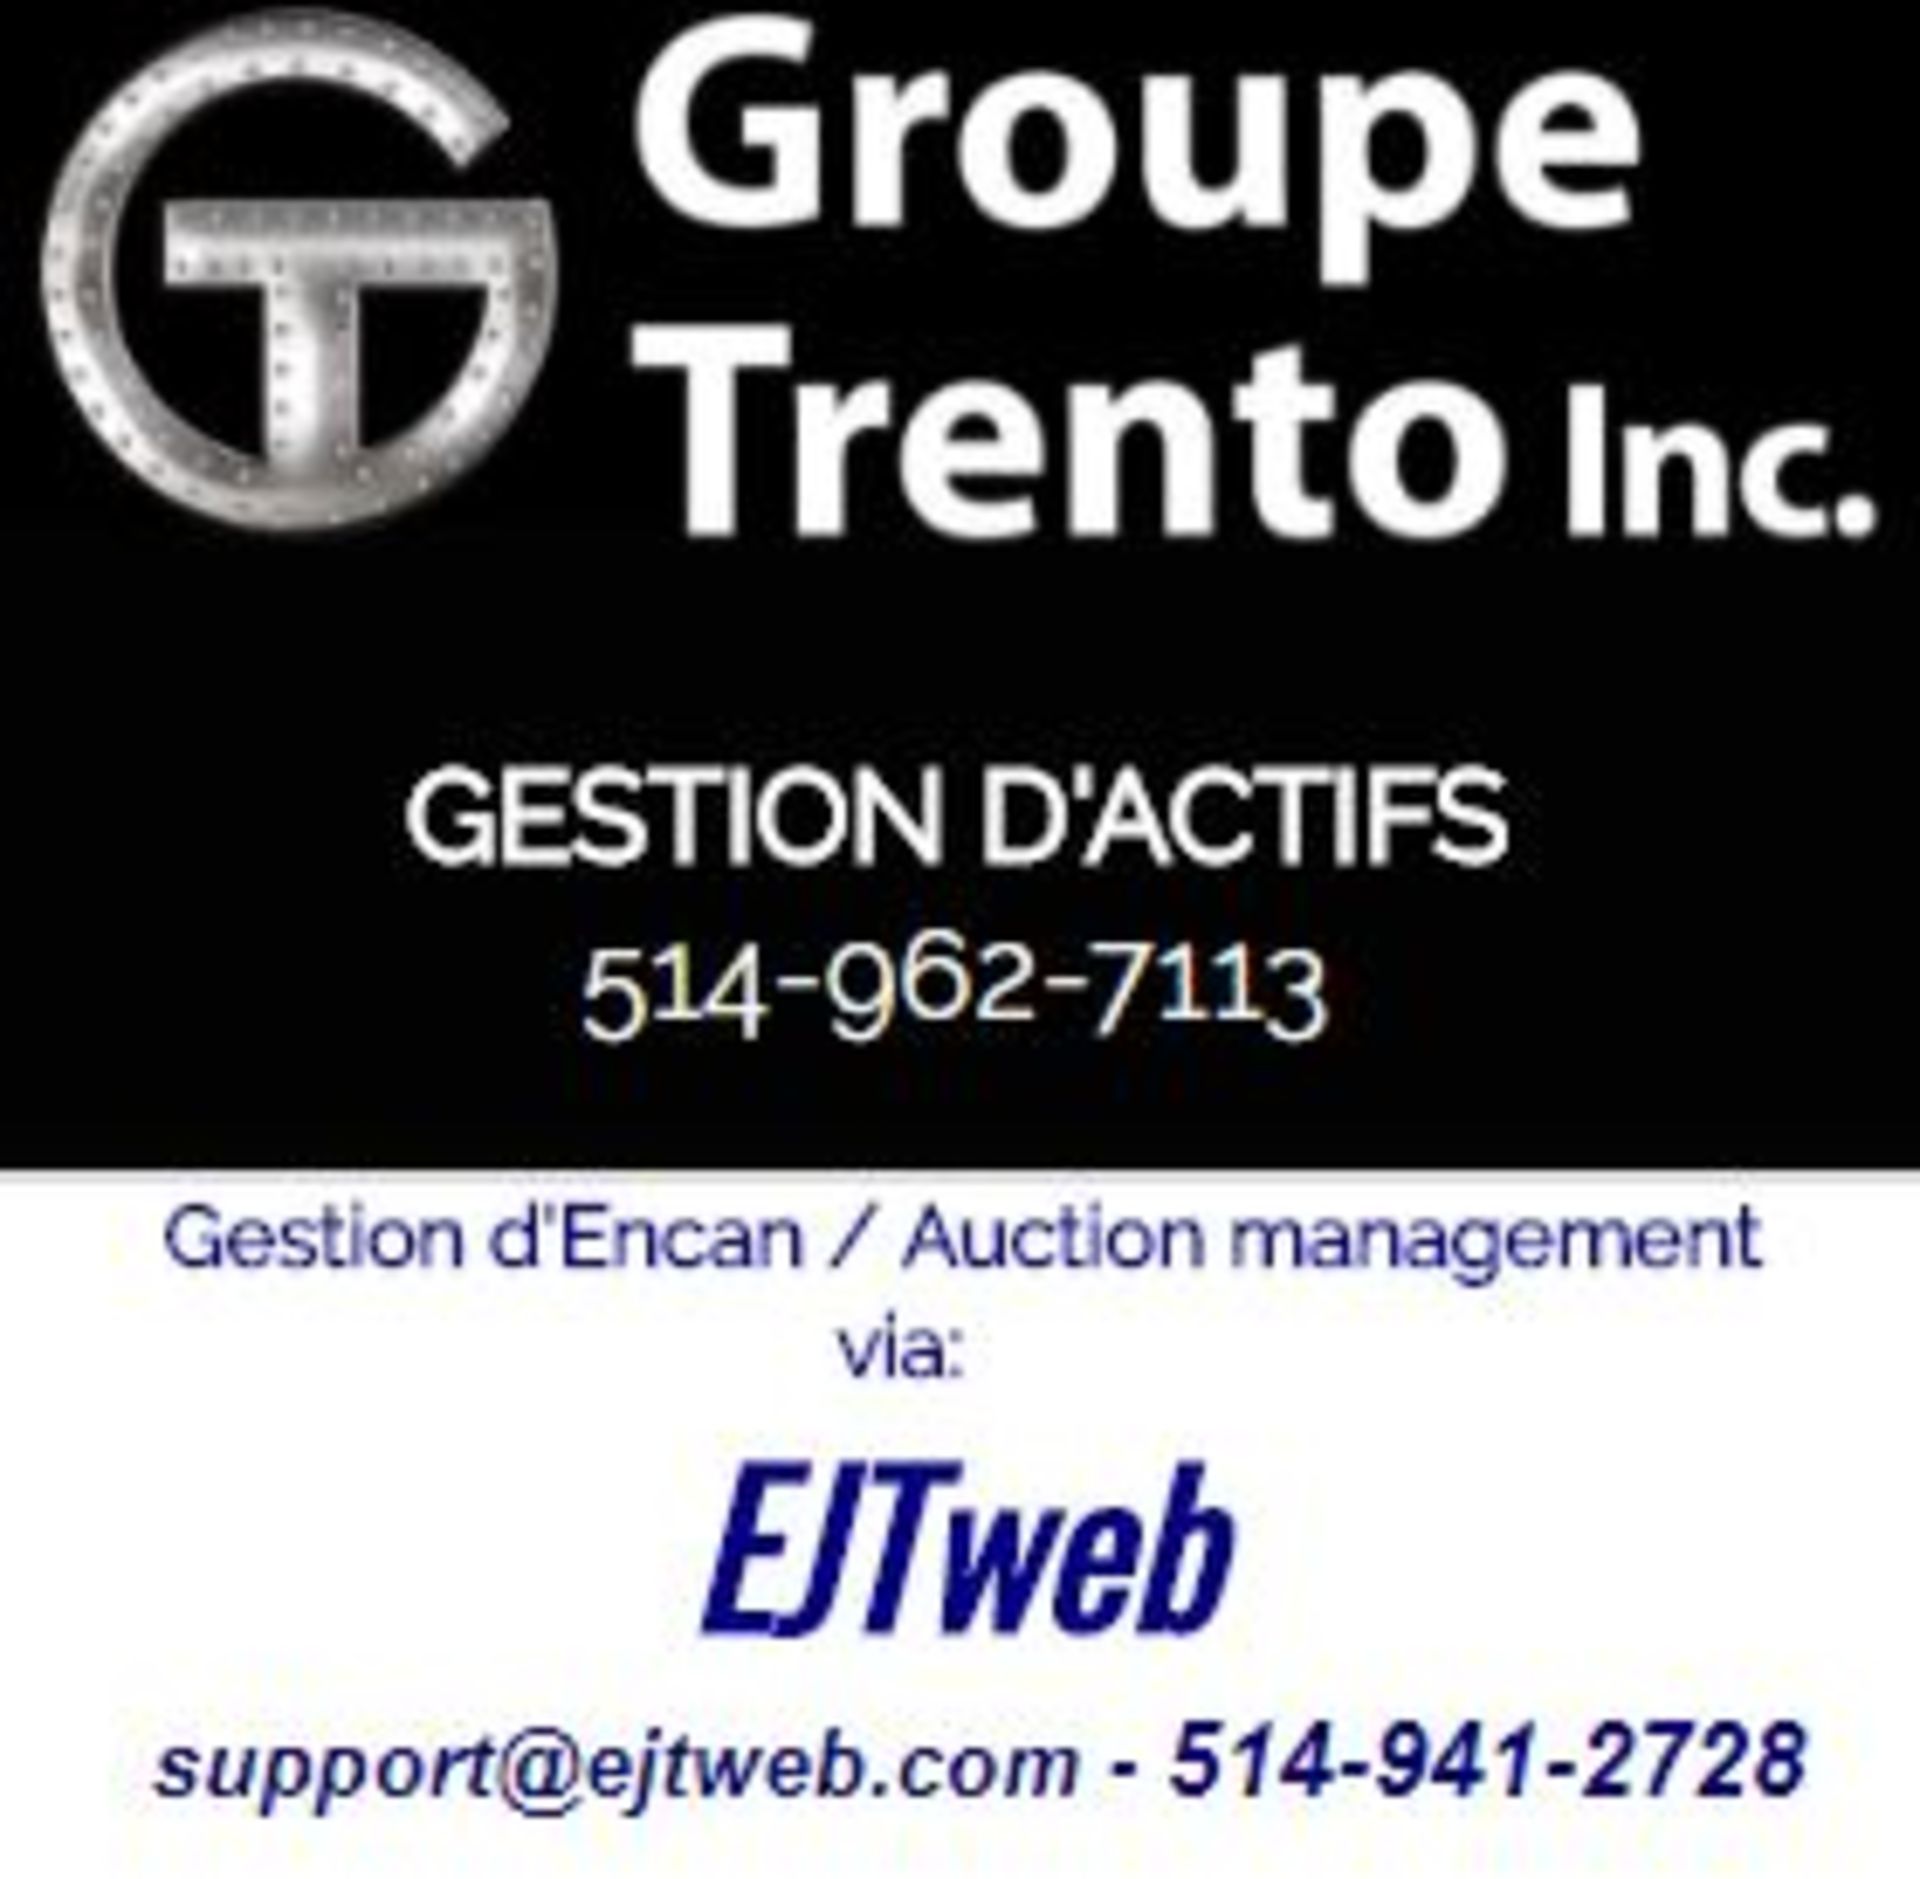 Online Auction management / Gestion d'Encan en ligne: EJTweb.com - 514-941-2728